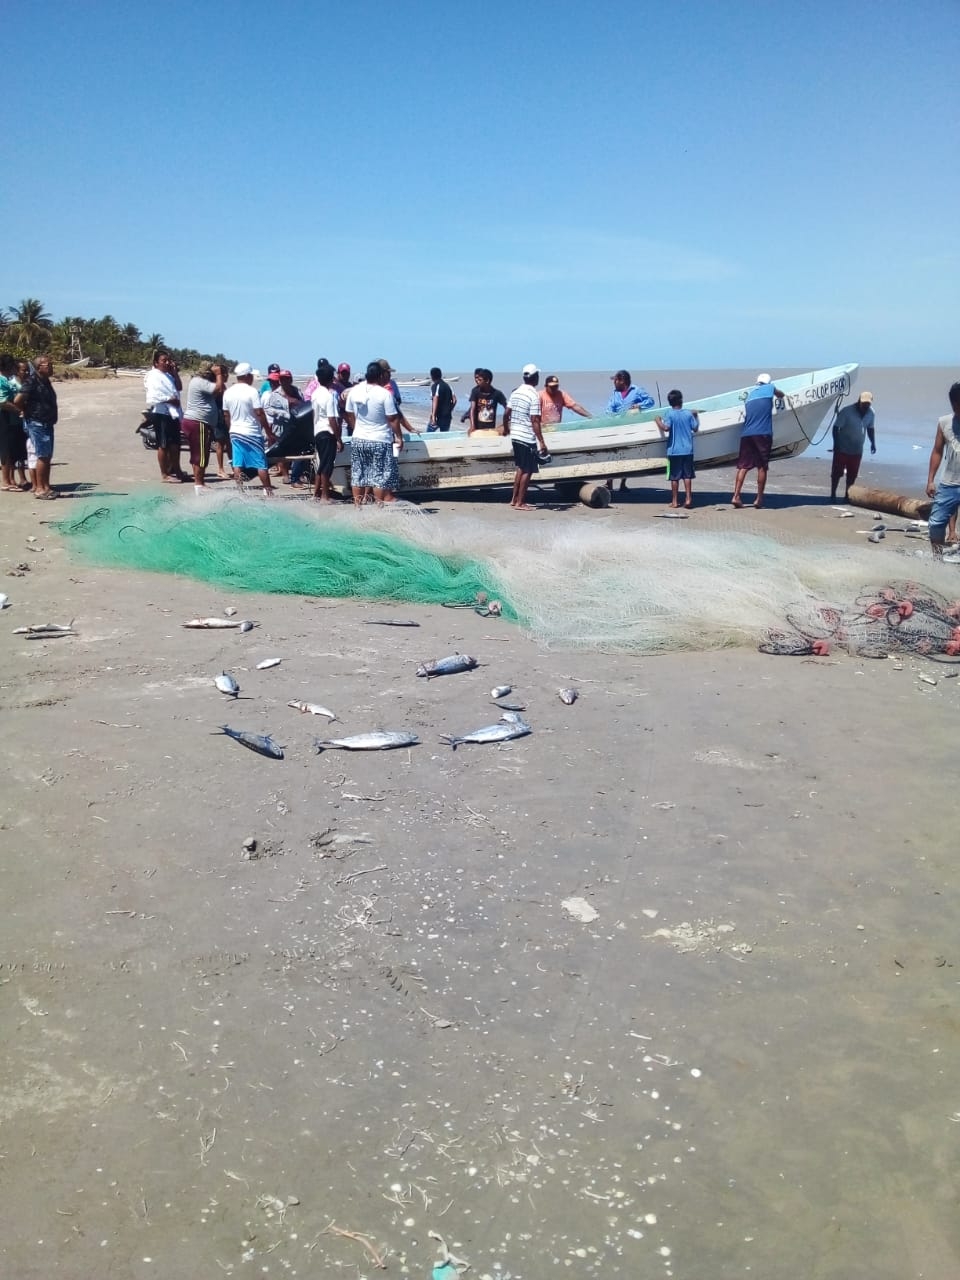 Los pescadores extraviados pertenece a la cooperativa pesquera ribereña “El Faro”